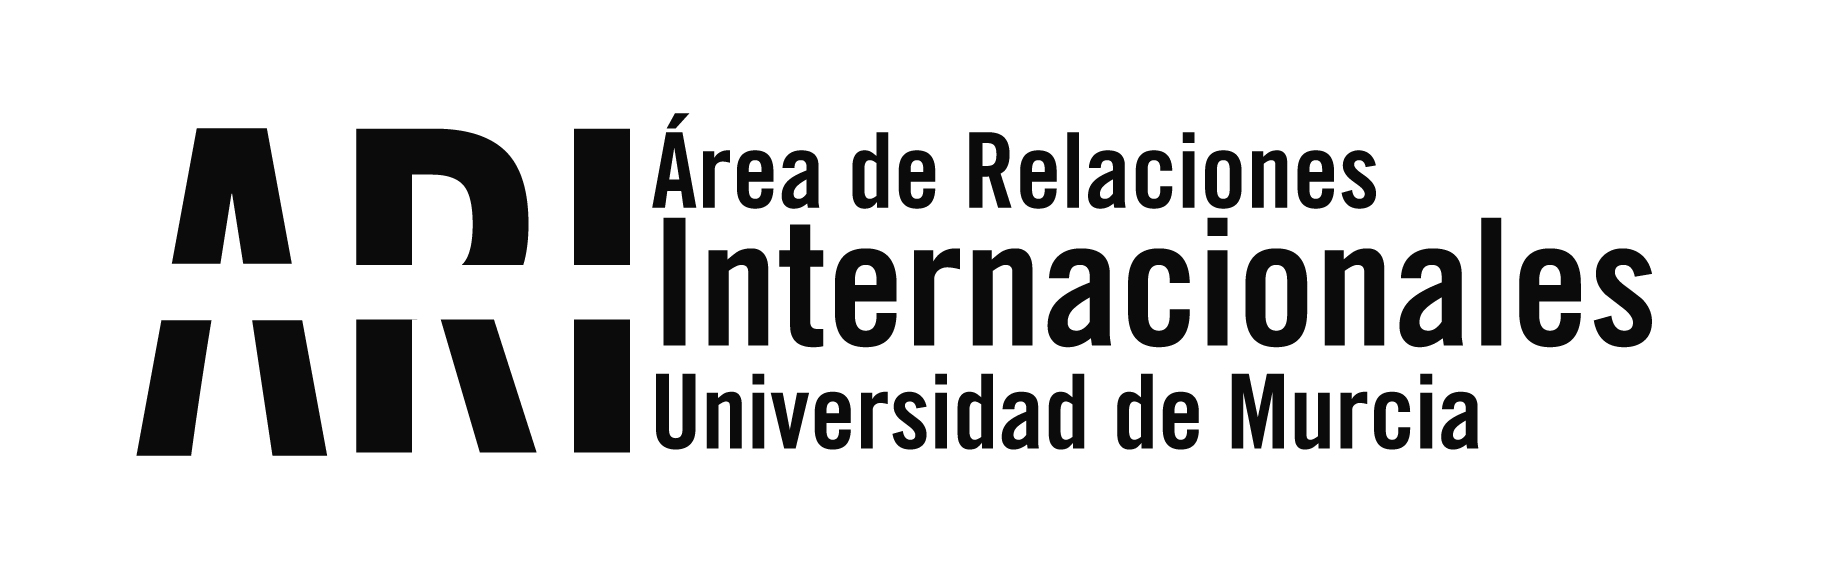 Boletín informativo de Internacionalización 23/2021 - Boletín informativo de Internacionalización 23/2021 - Área de Relaciones Internacionales